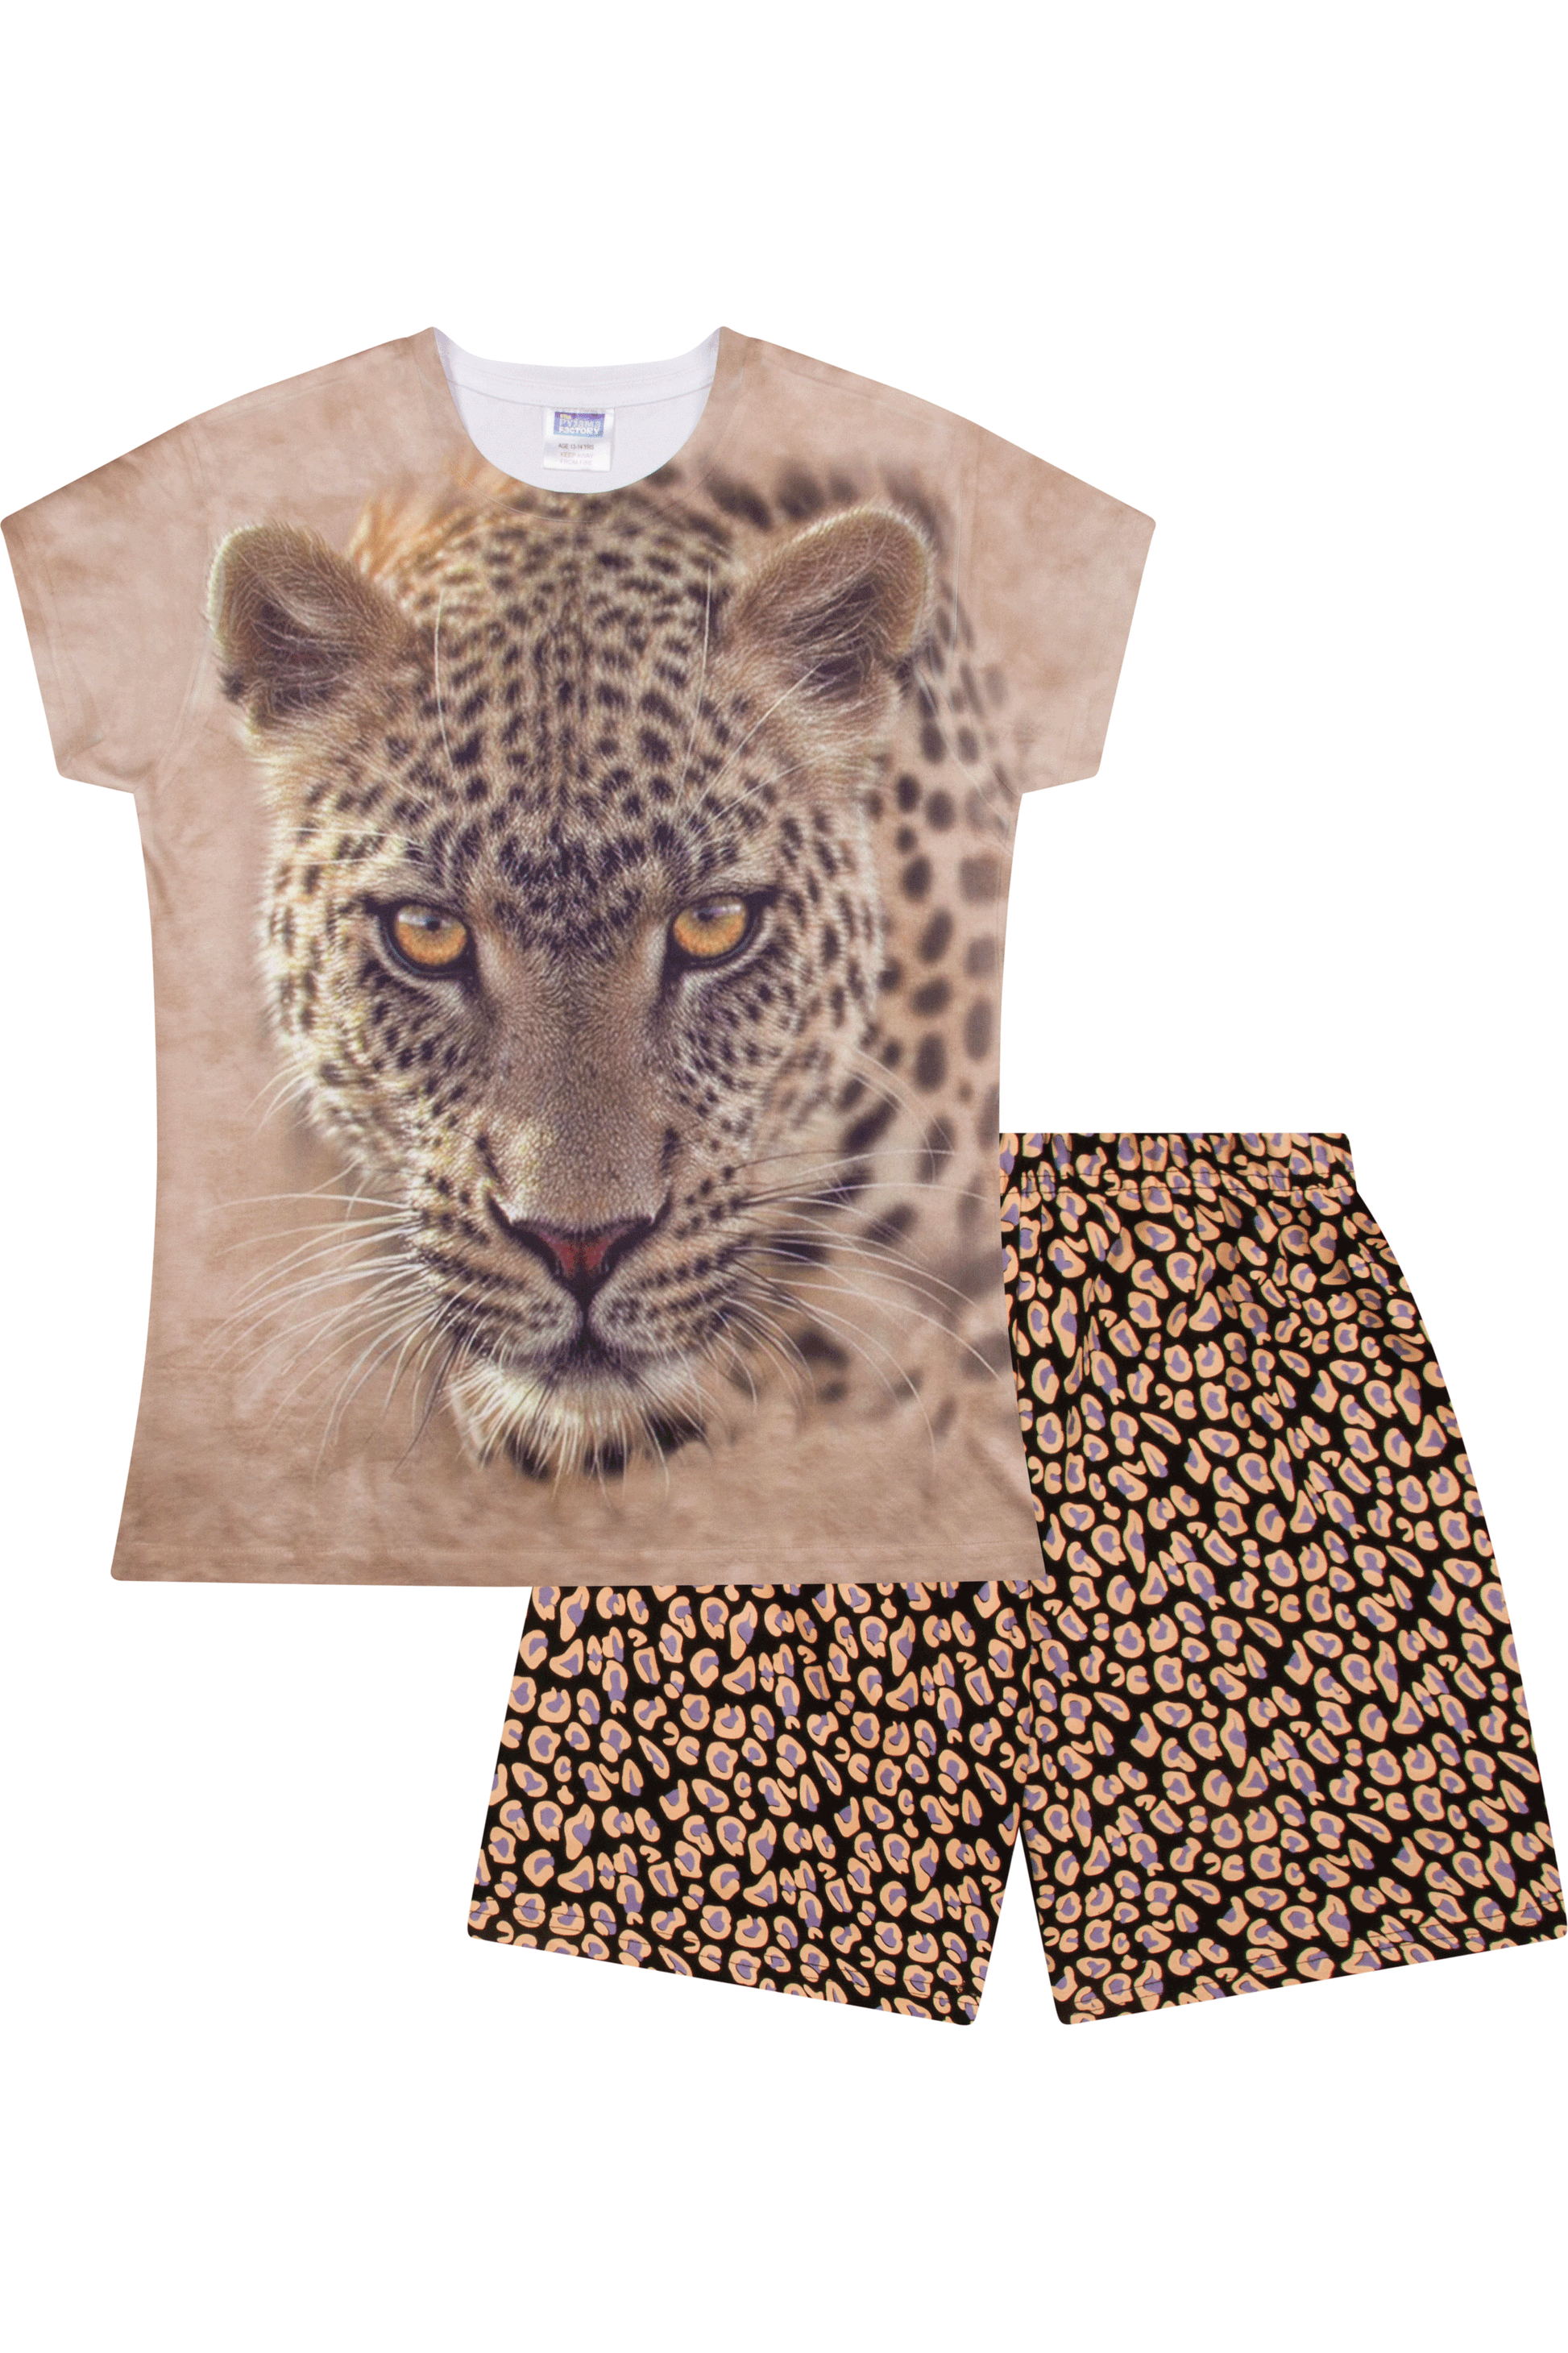 Cheetah Animal Print Short Pyjamas - Pyjamas.com